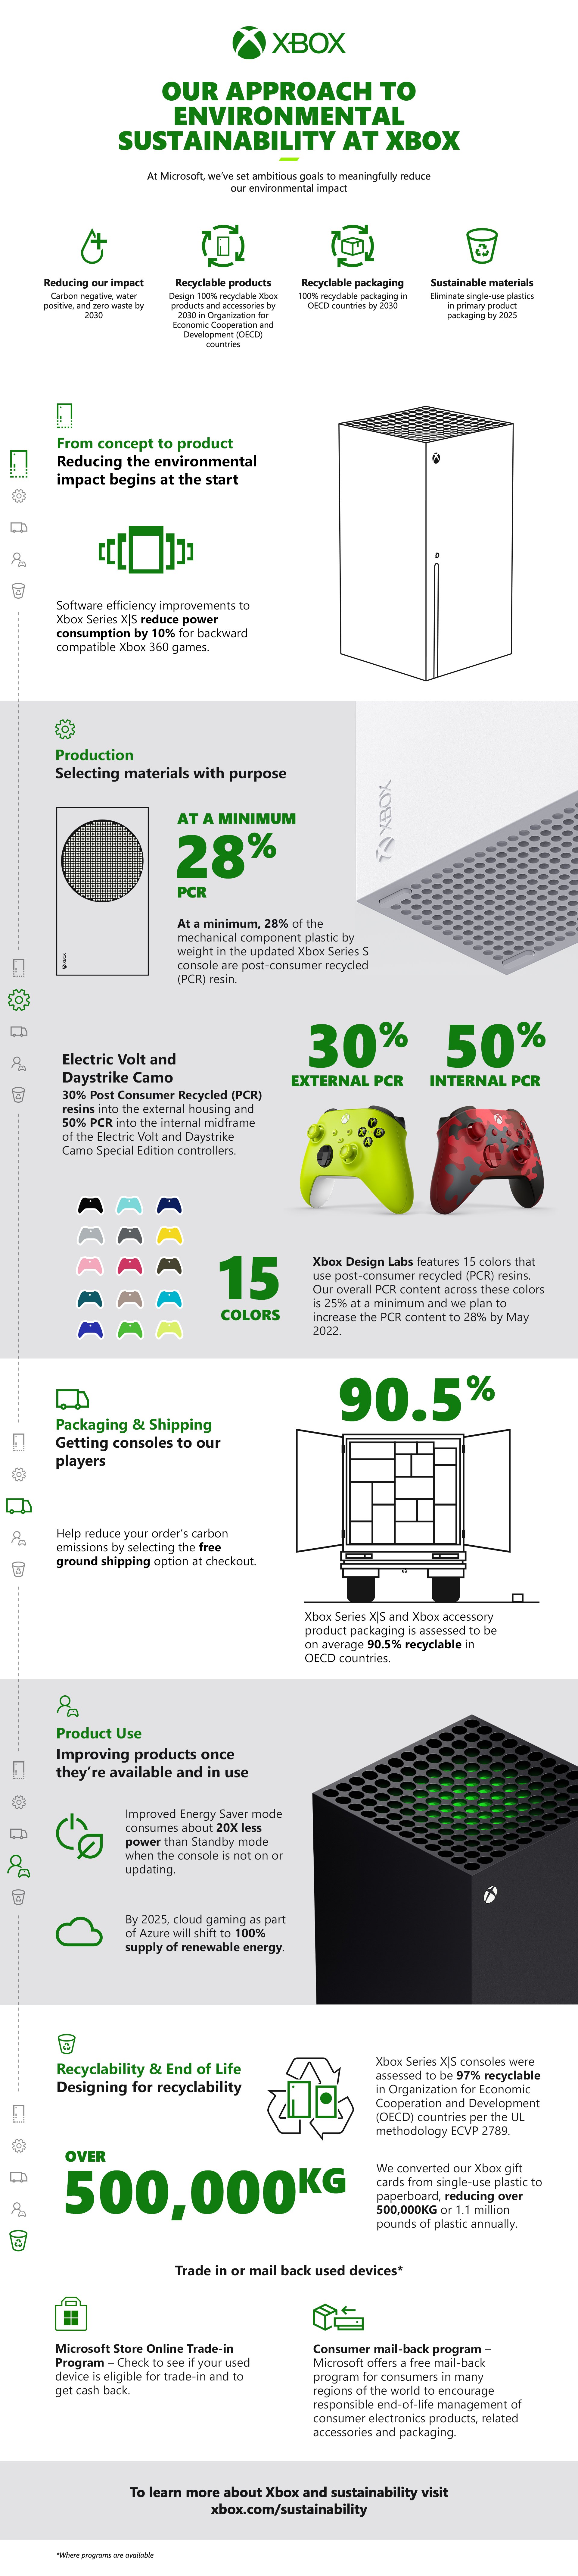 Xbox Sustainability - Product Lifecycle